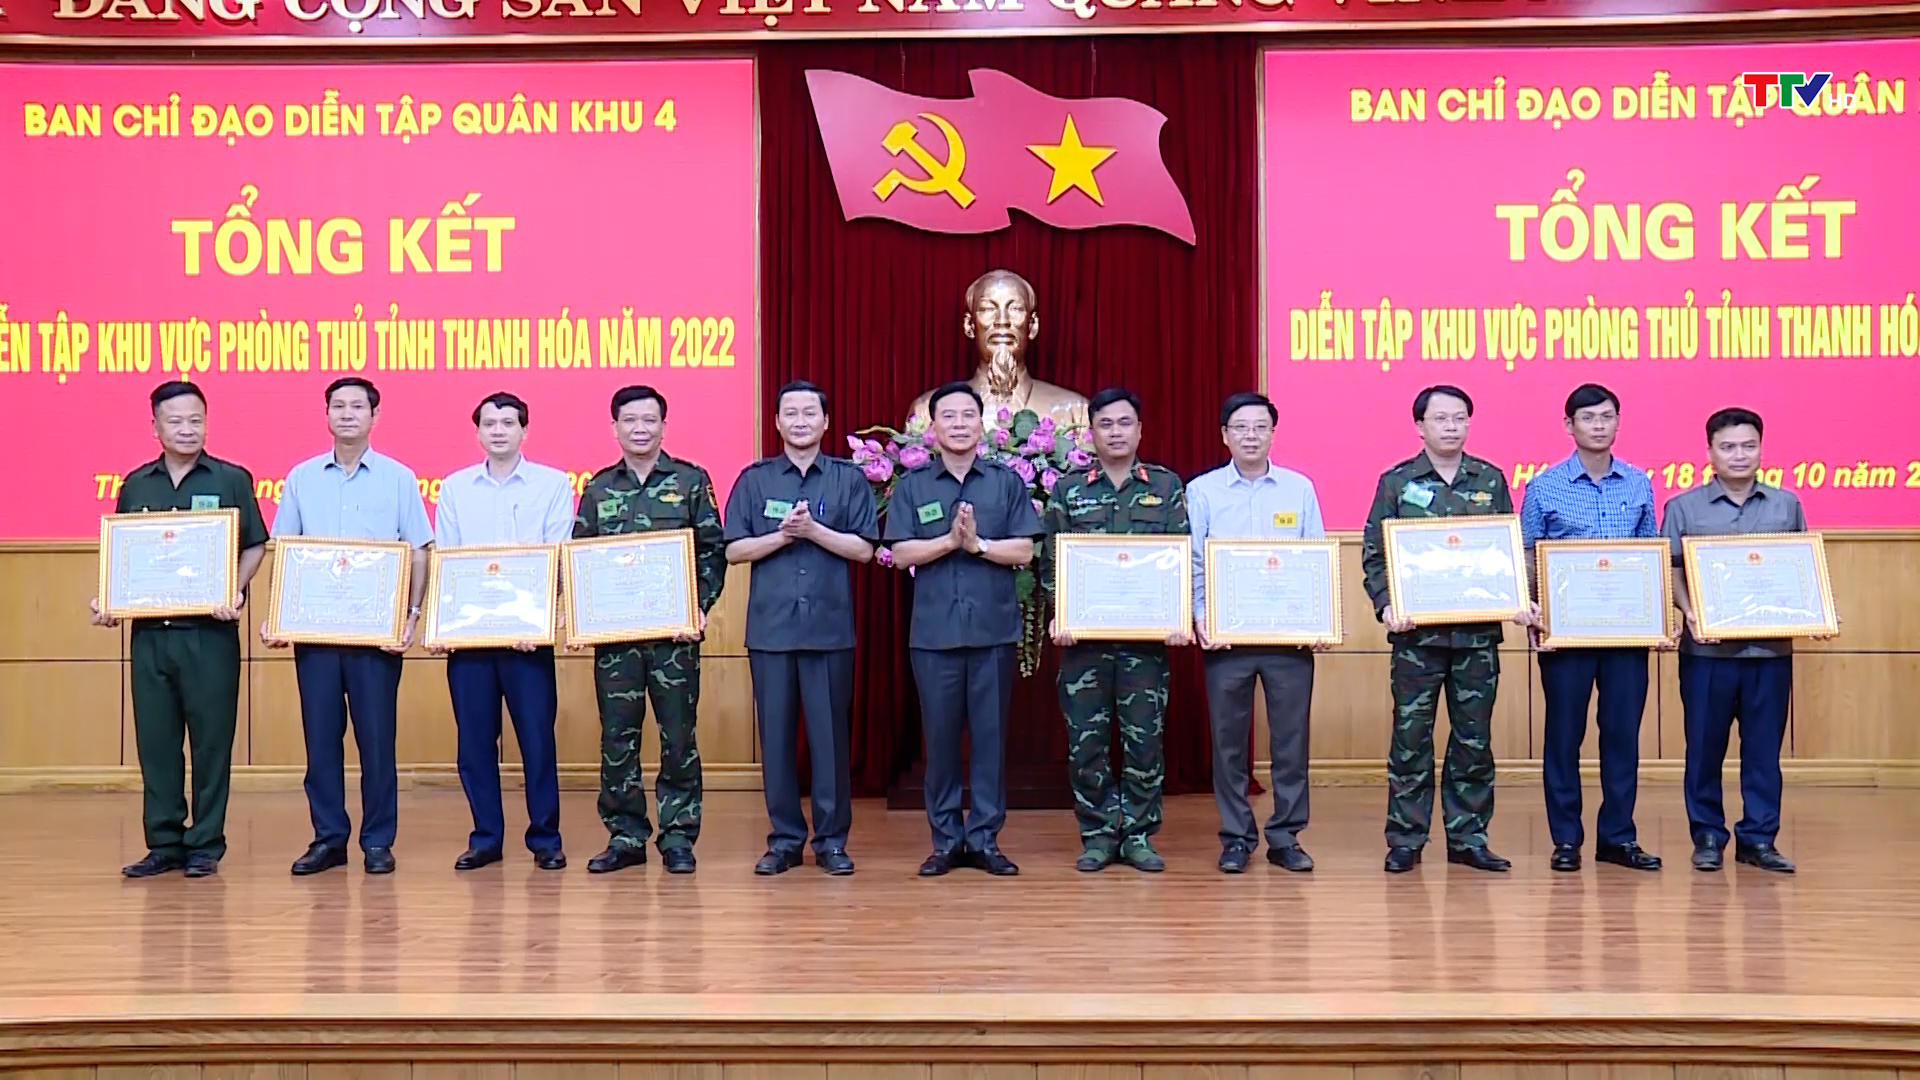 Diễn tập khu vực phòng thủ tỉnh Thanh Hoá năm 2022  thành công tốt đẹp, đảm bảo an toàn tuyệt đối  - Ảnh 6.